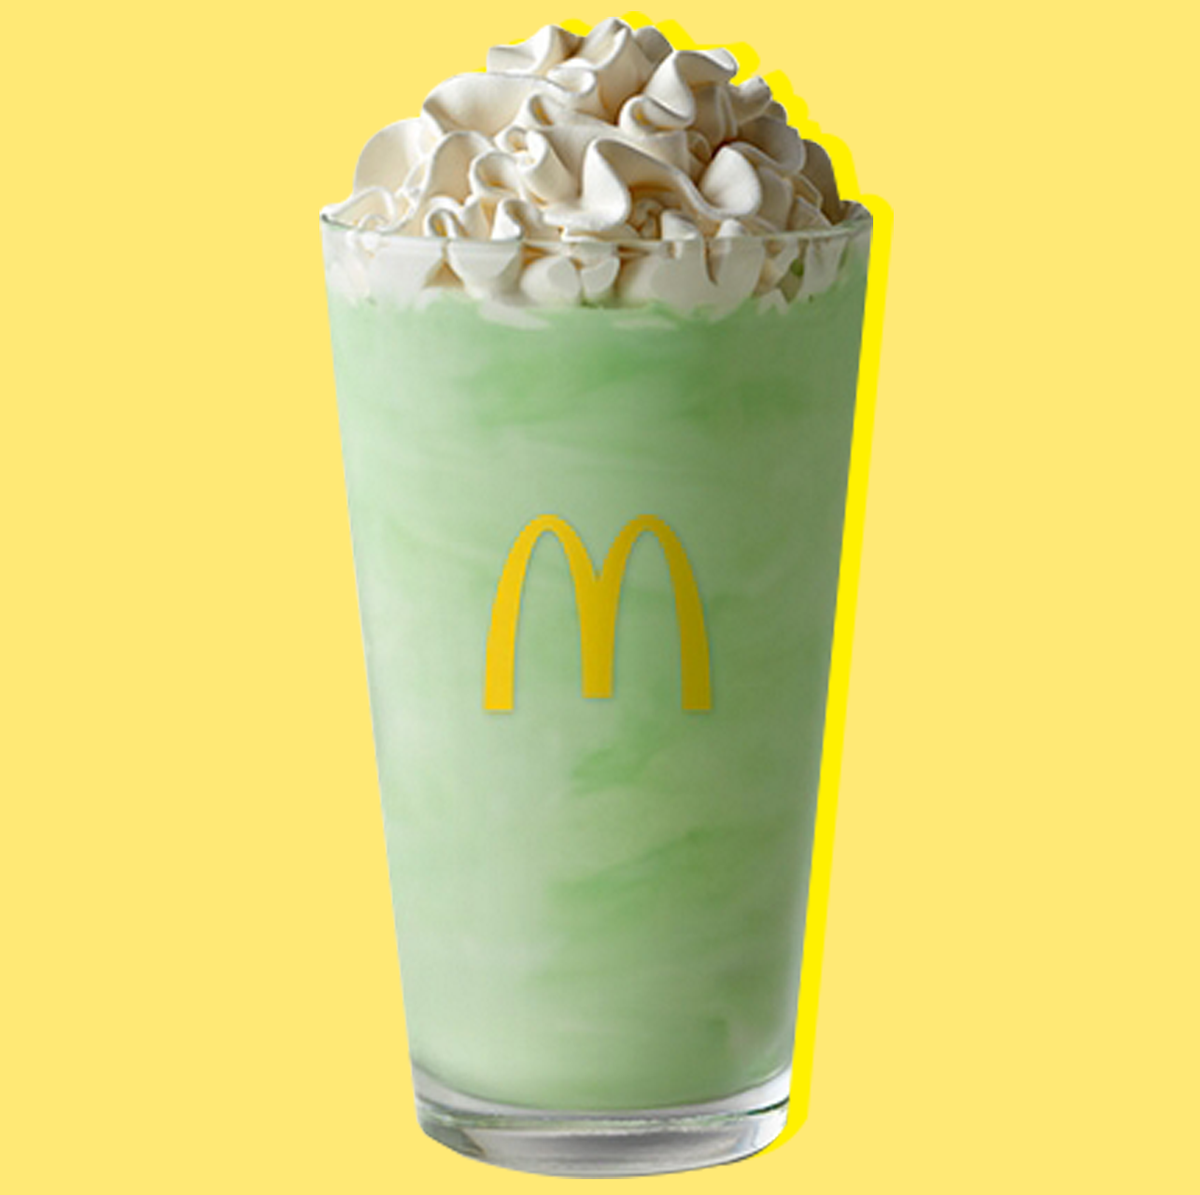 McDonald's Shamrock Shake Calories and Ingredients